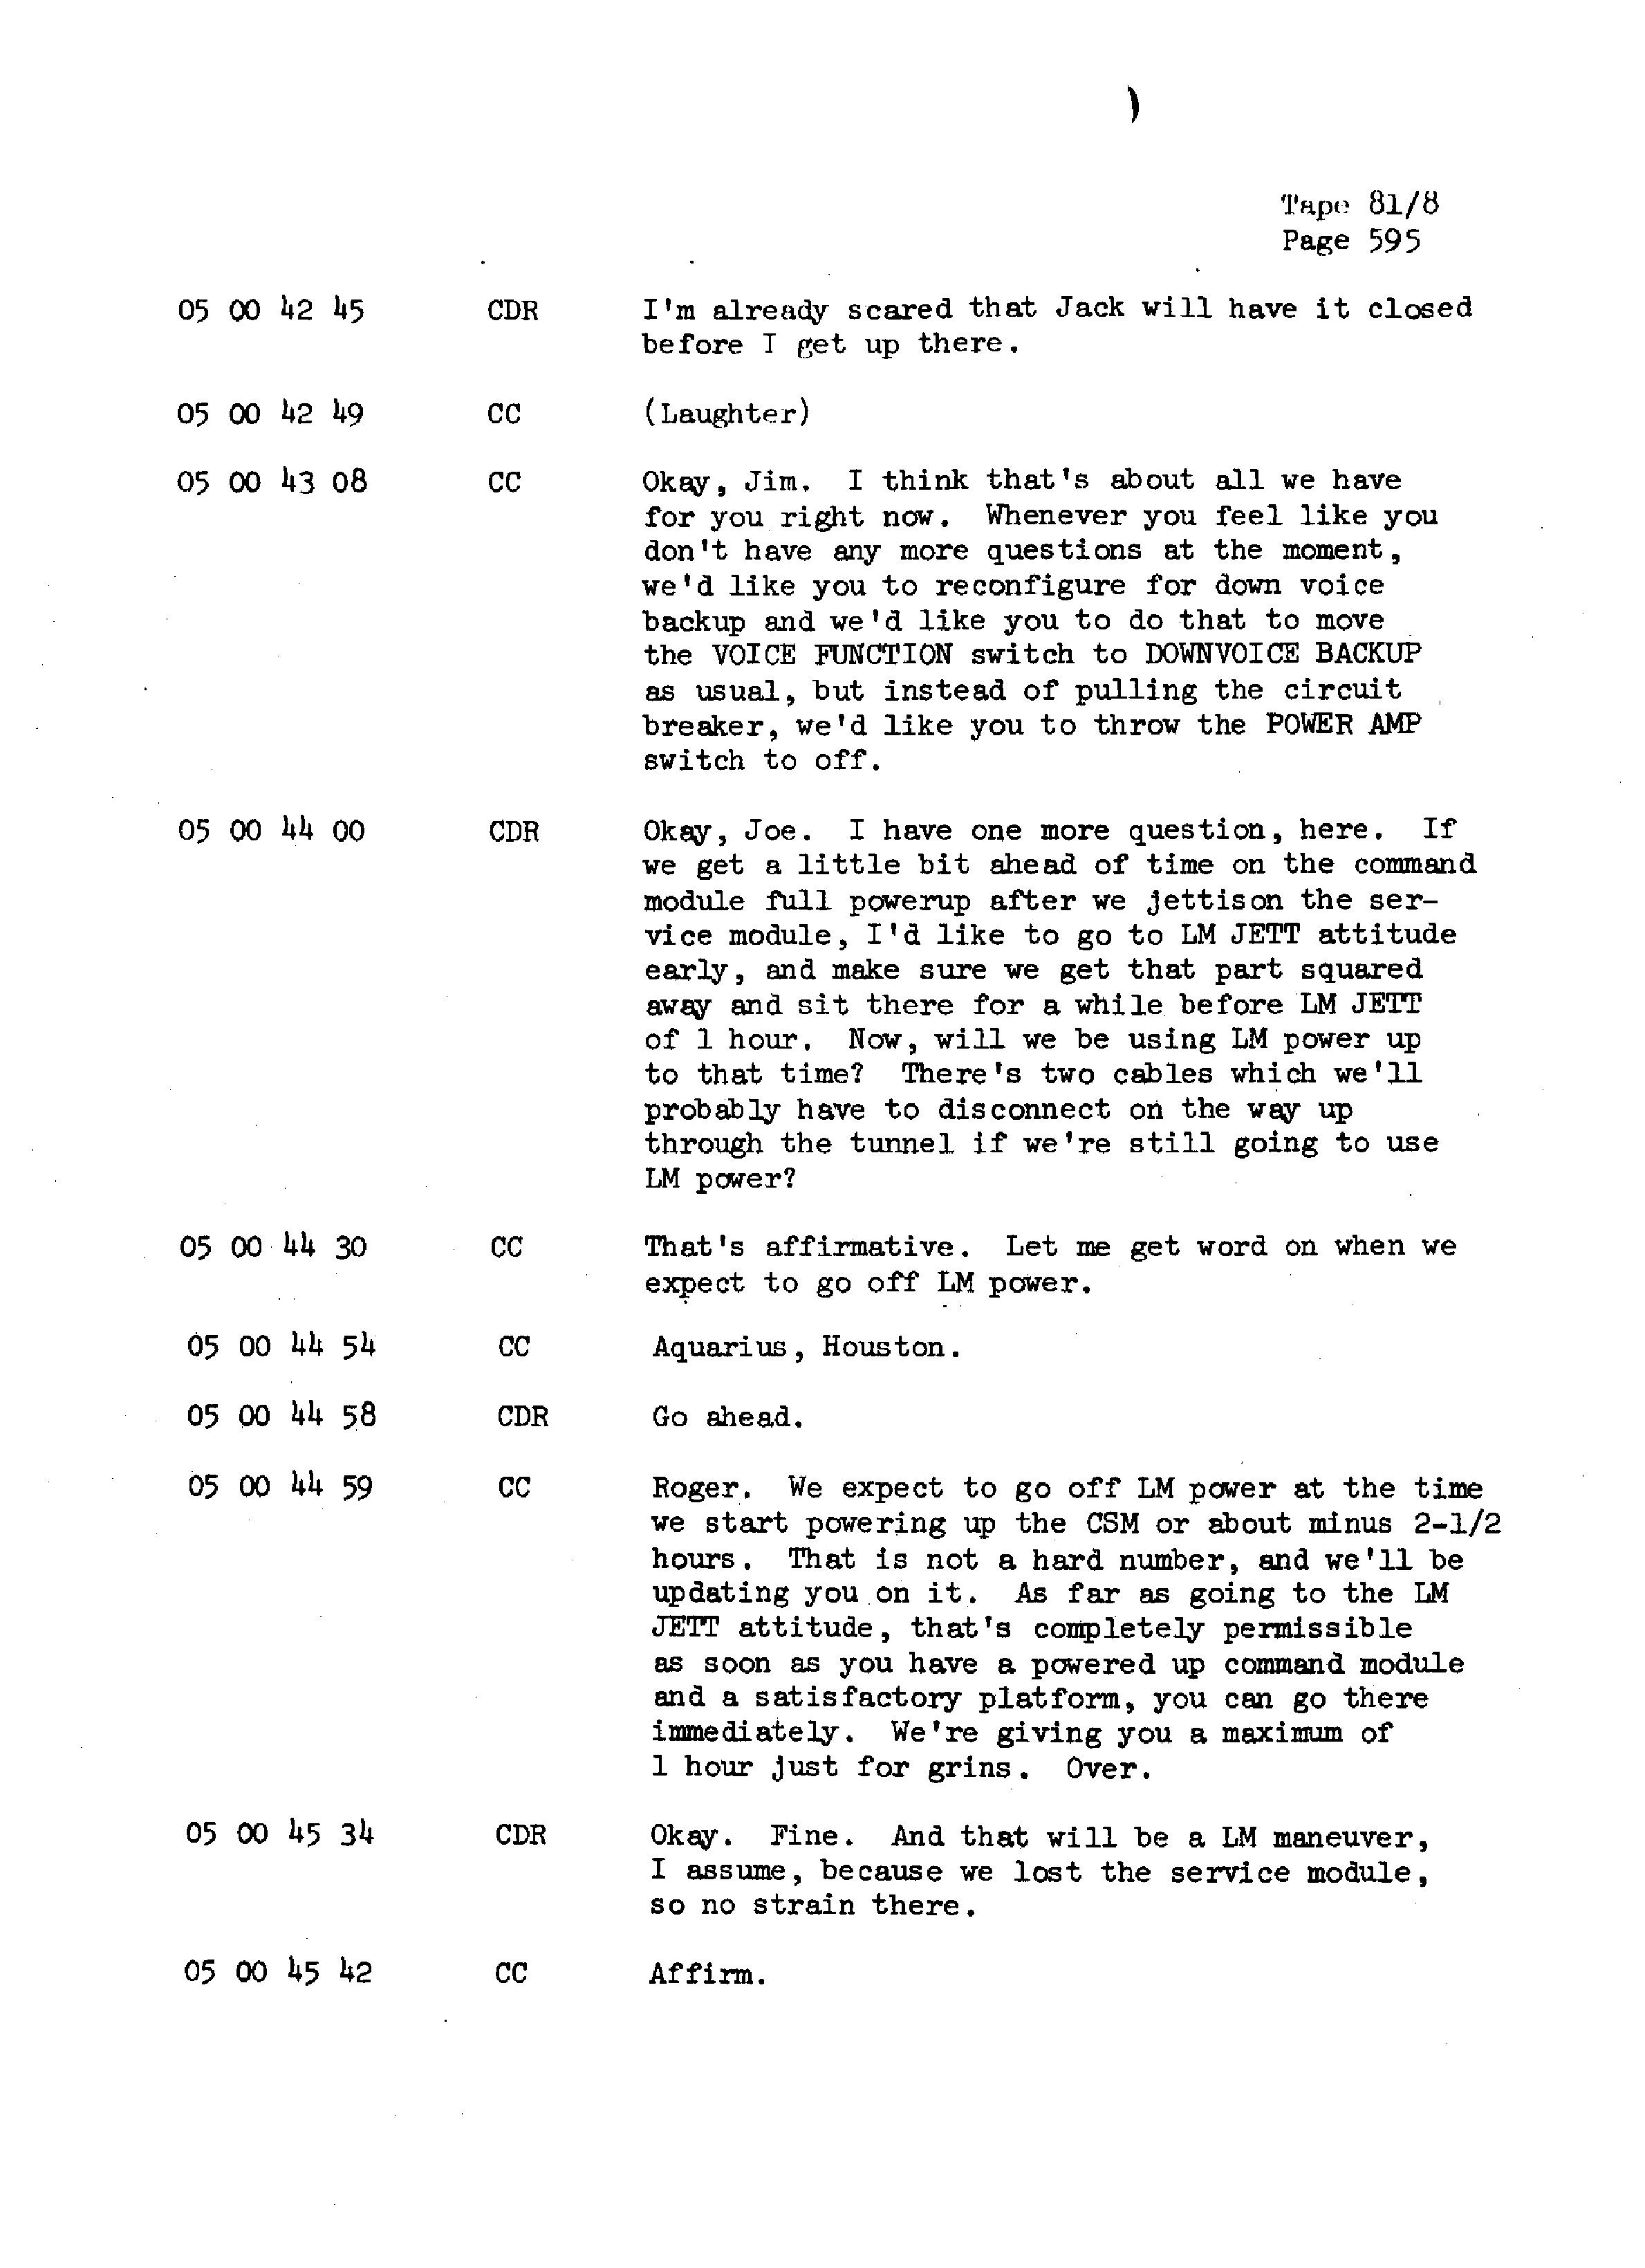 Page 602 of Apollo 13’s original transcript